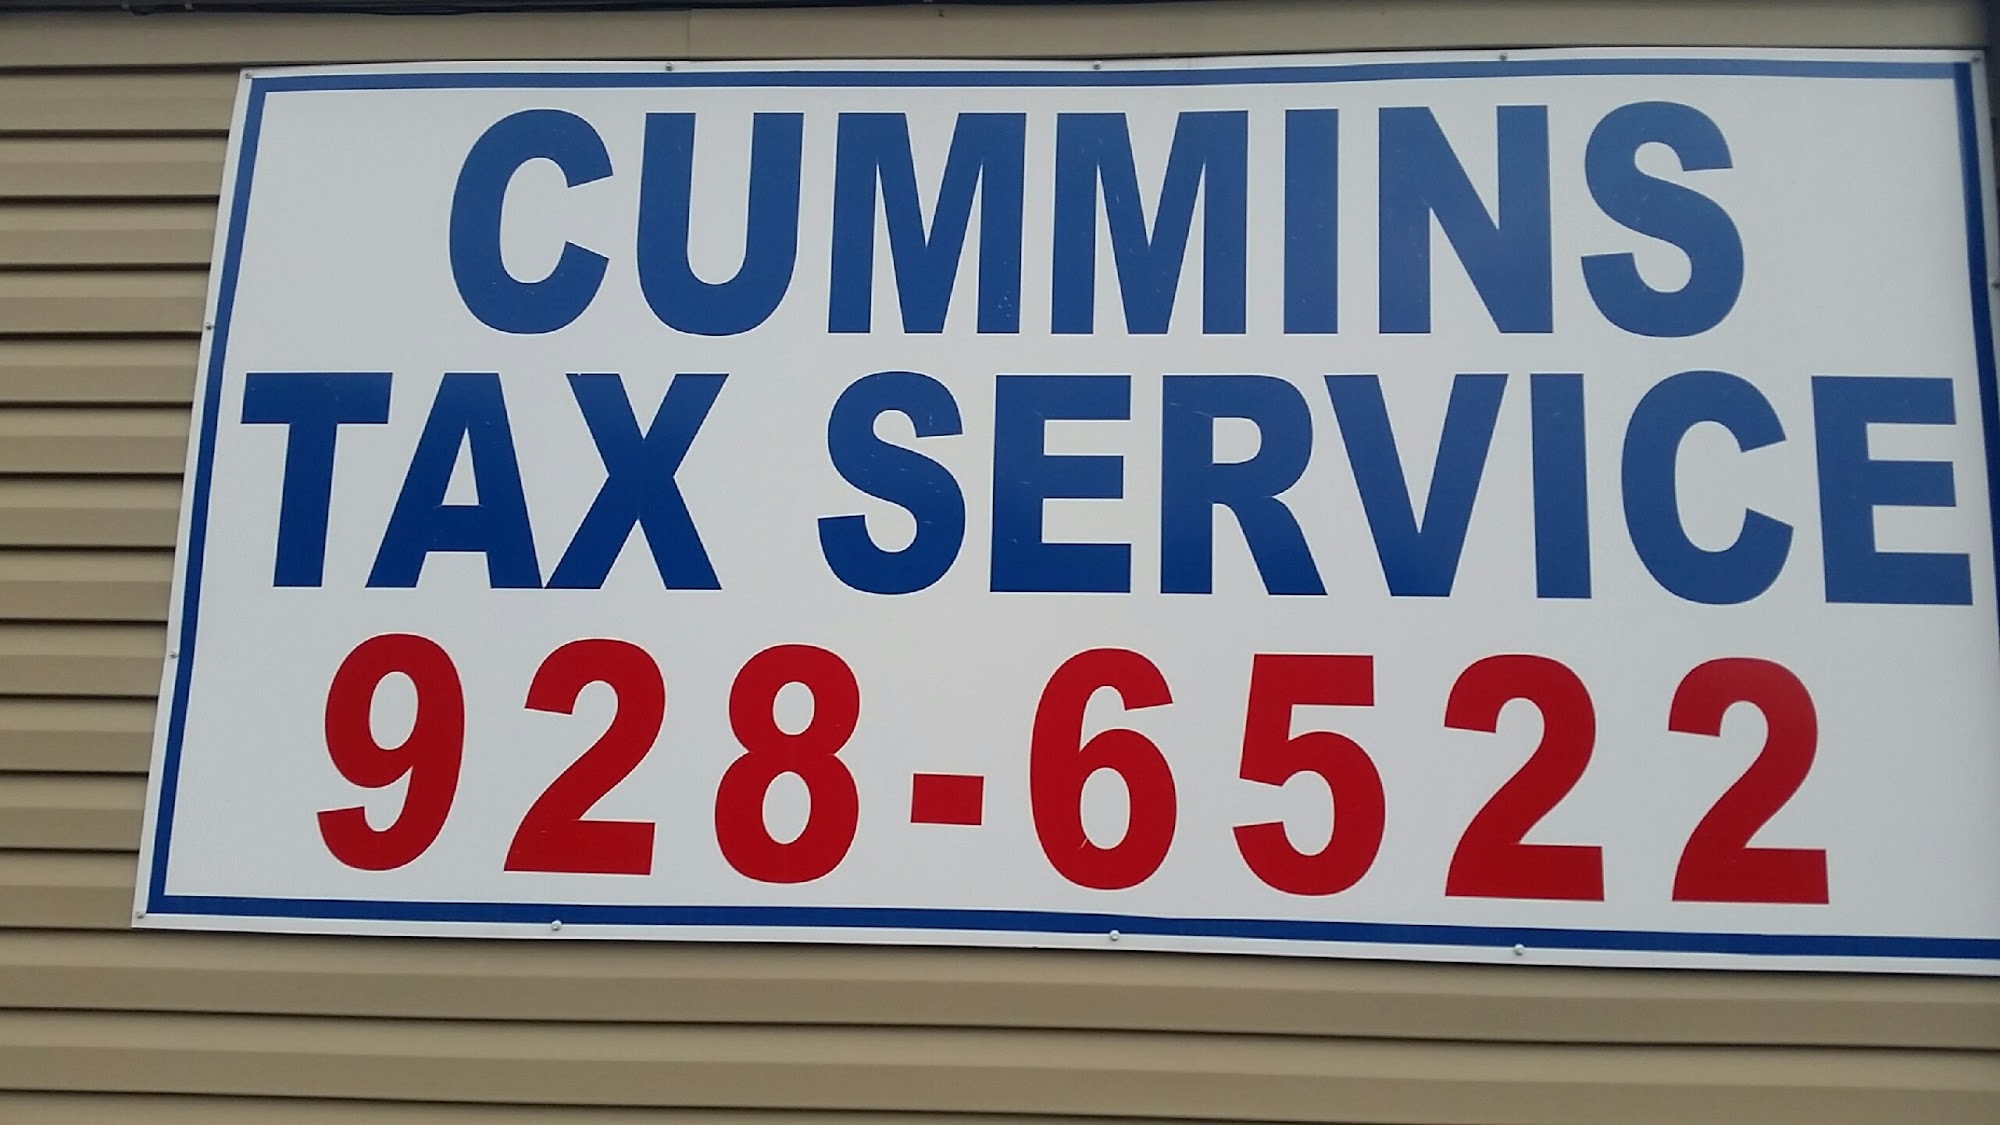 Cummins Tax Service